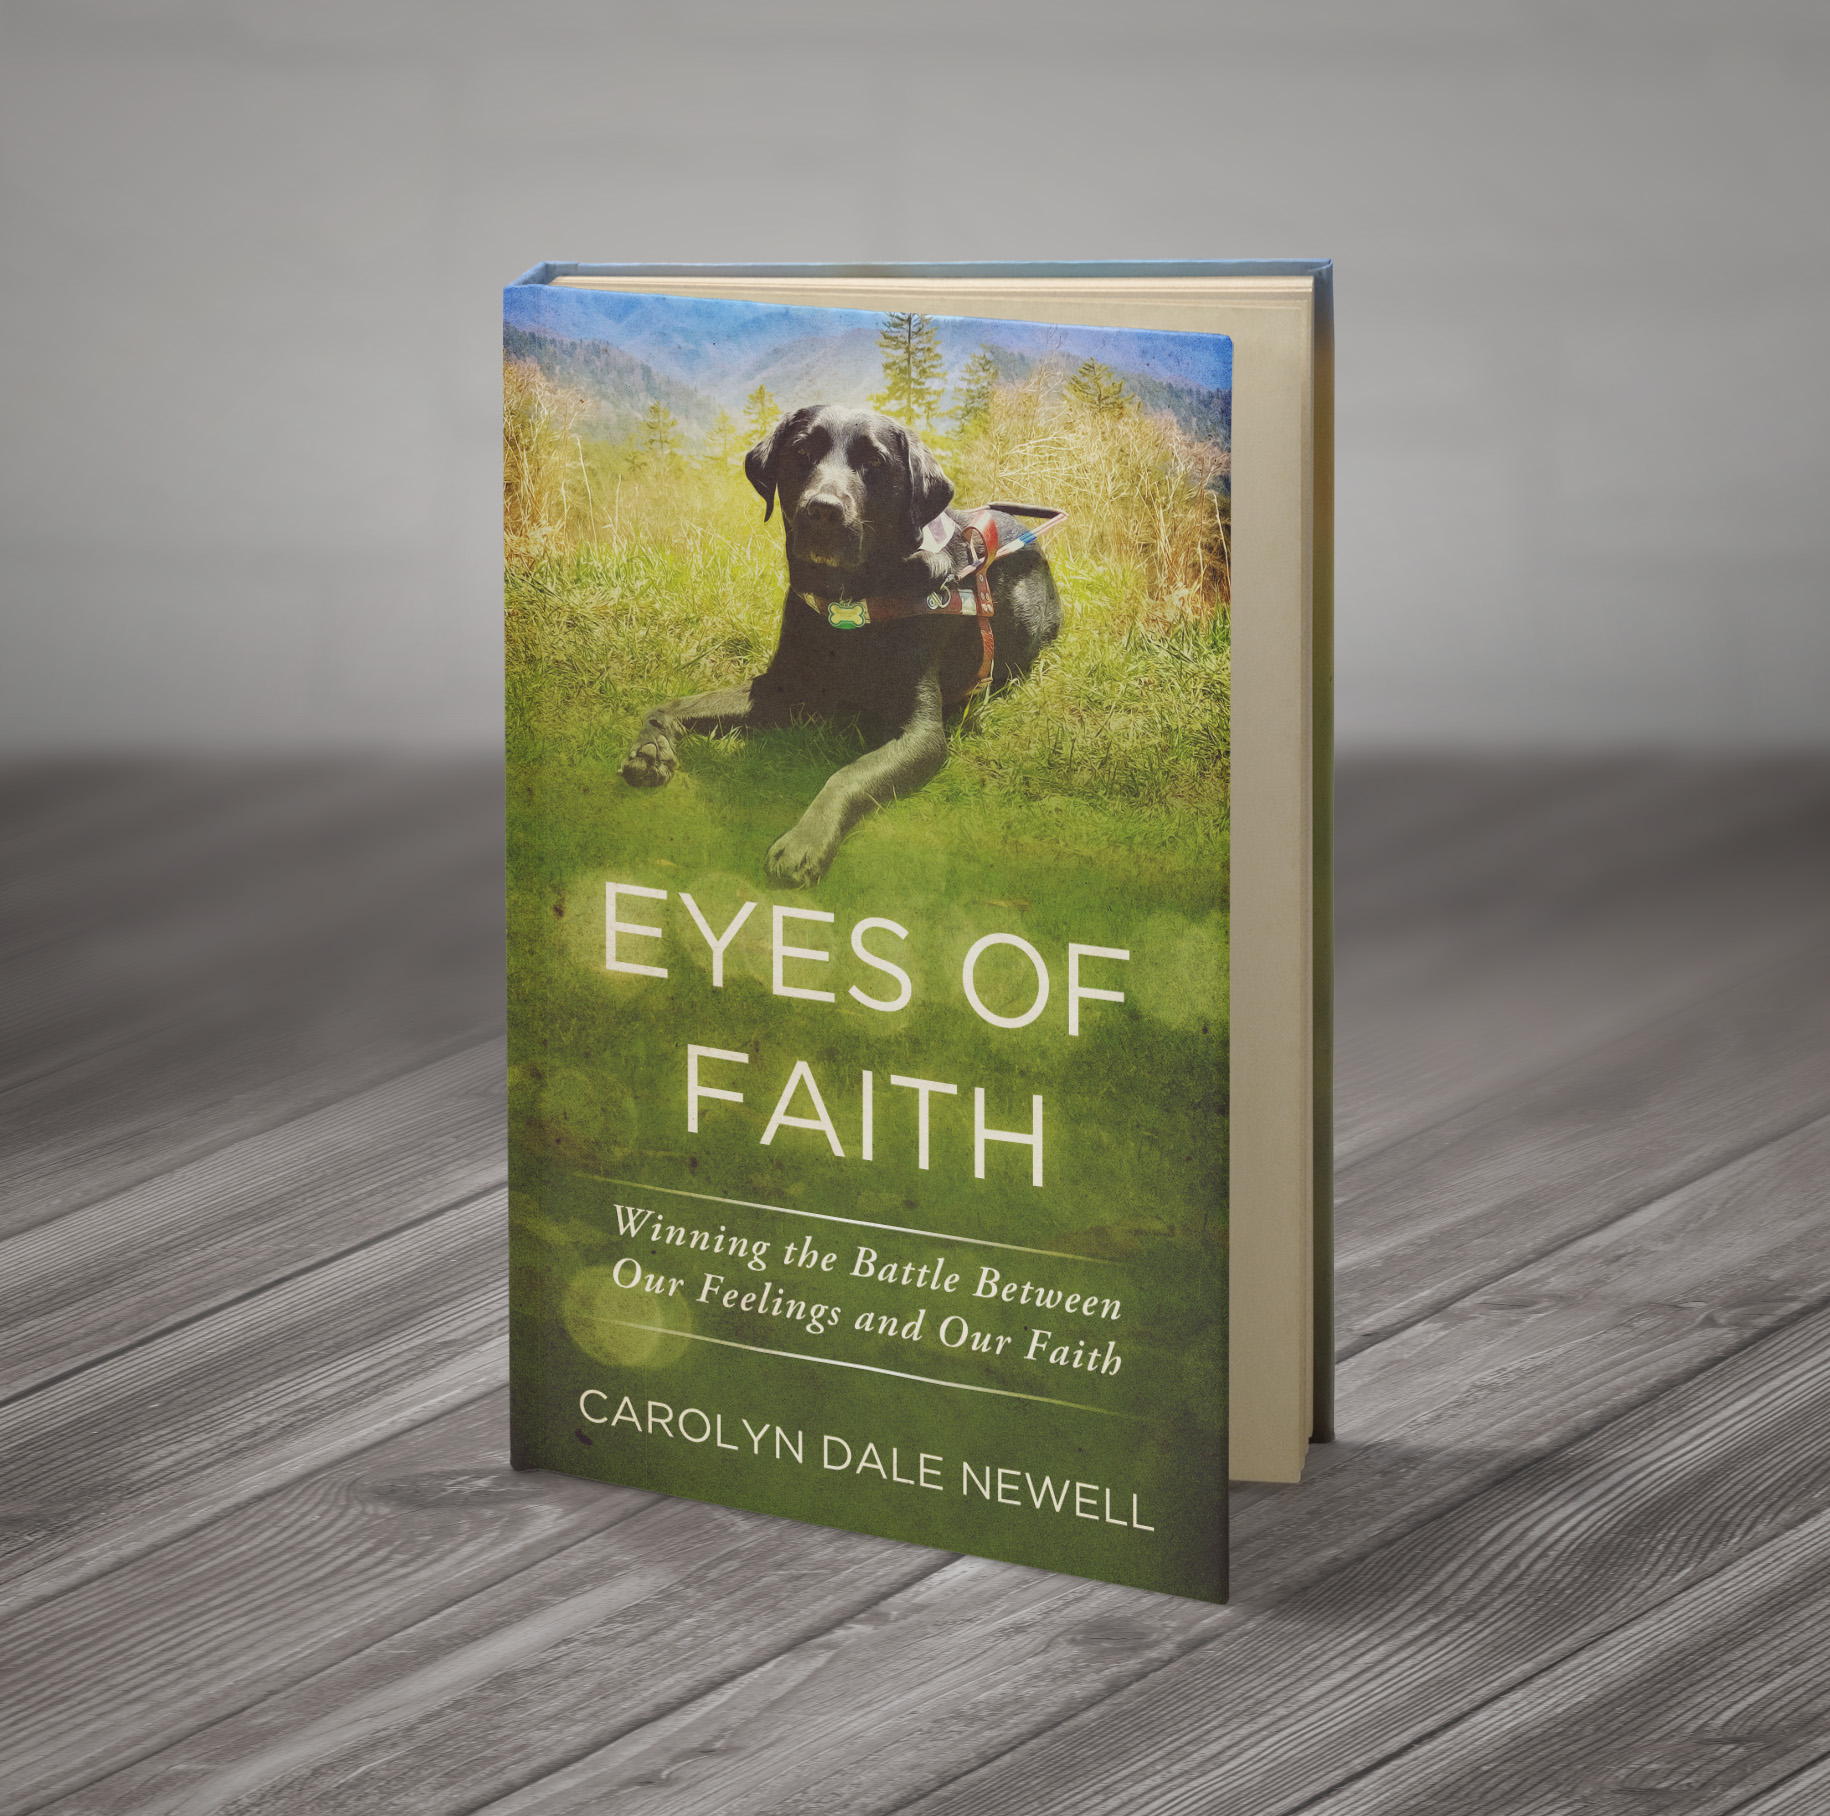 Eyes of Faith: Winning the Battle Between Our Feelings and Our Faith - AMountainOfFaith.com